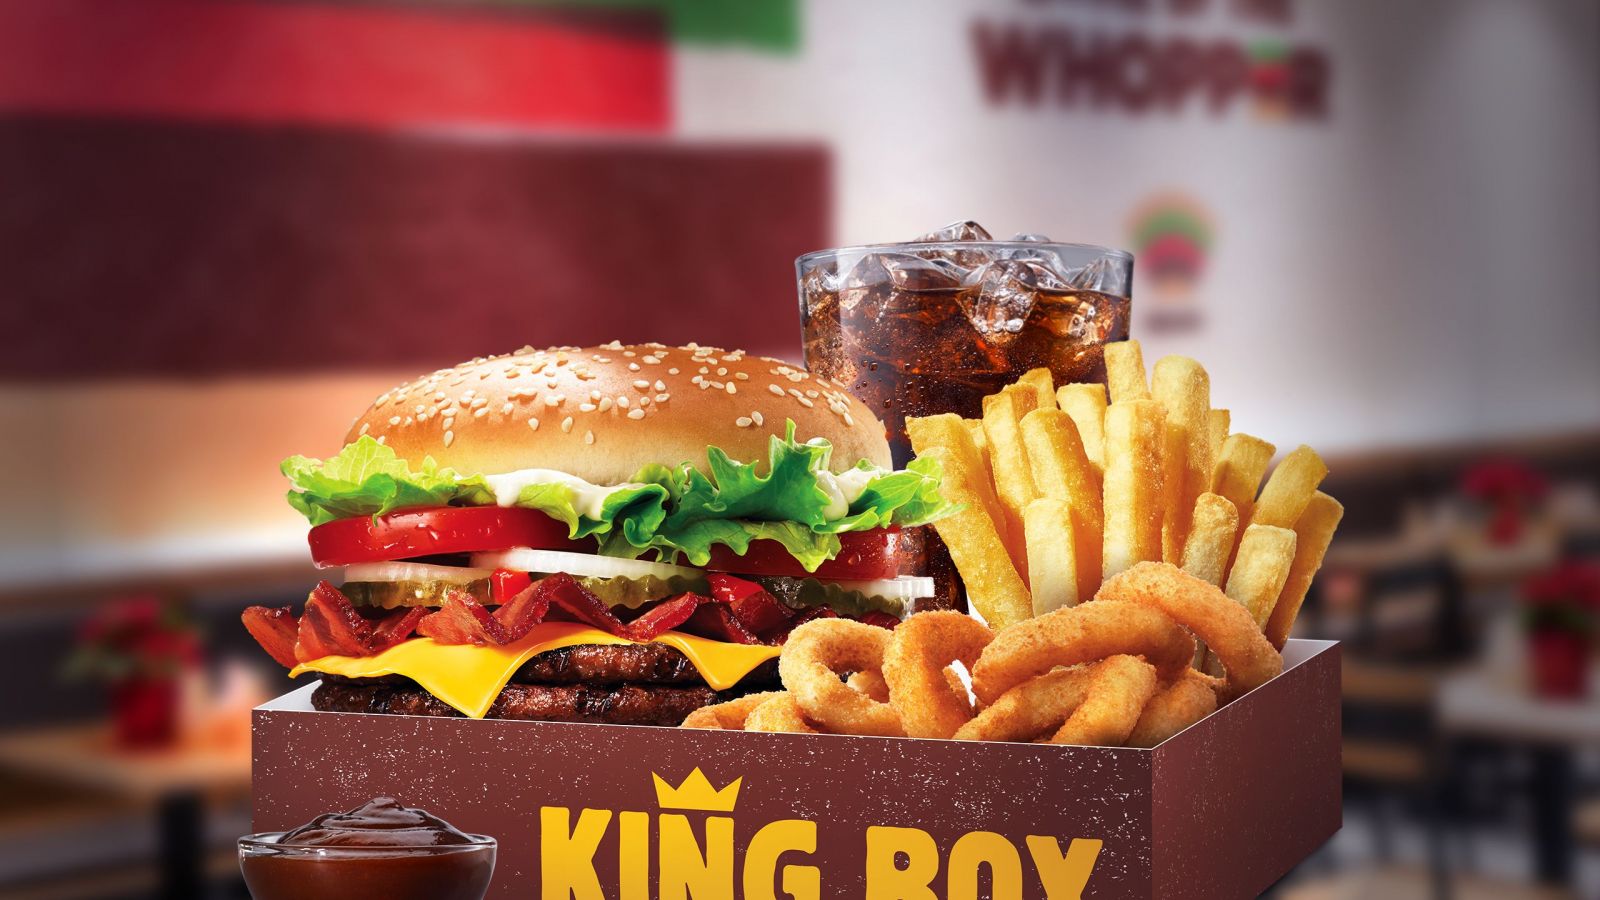 Burger King oznámil obrie menu. V gigantickej porcii nájdeš dva druhy burgrov, hranolky, bezodný nápoj a ešte aj cibuľové krúžky